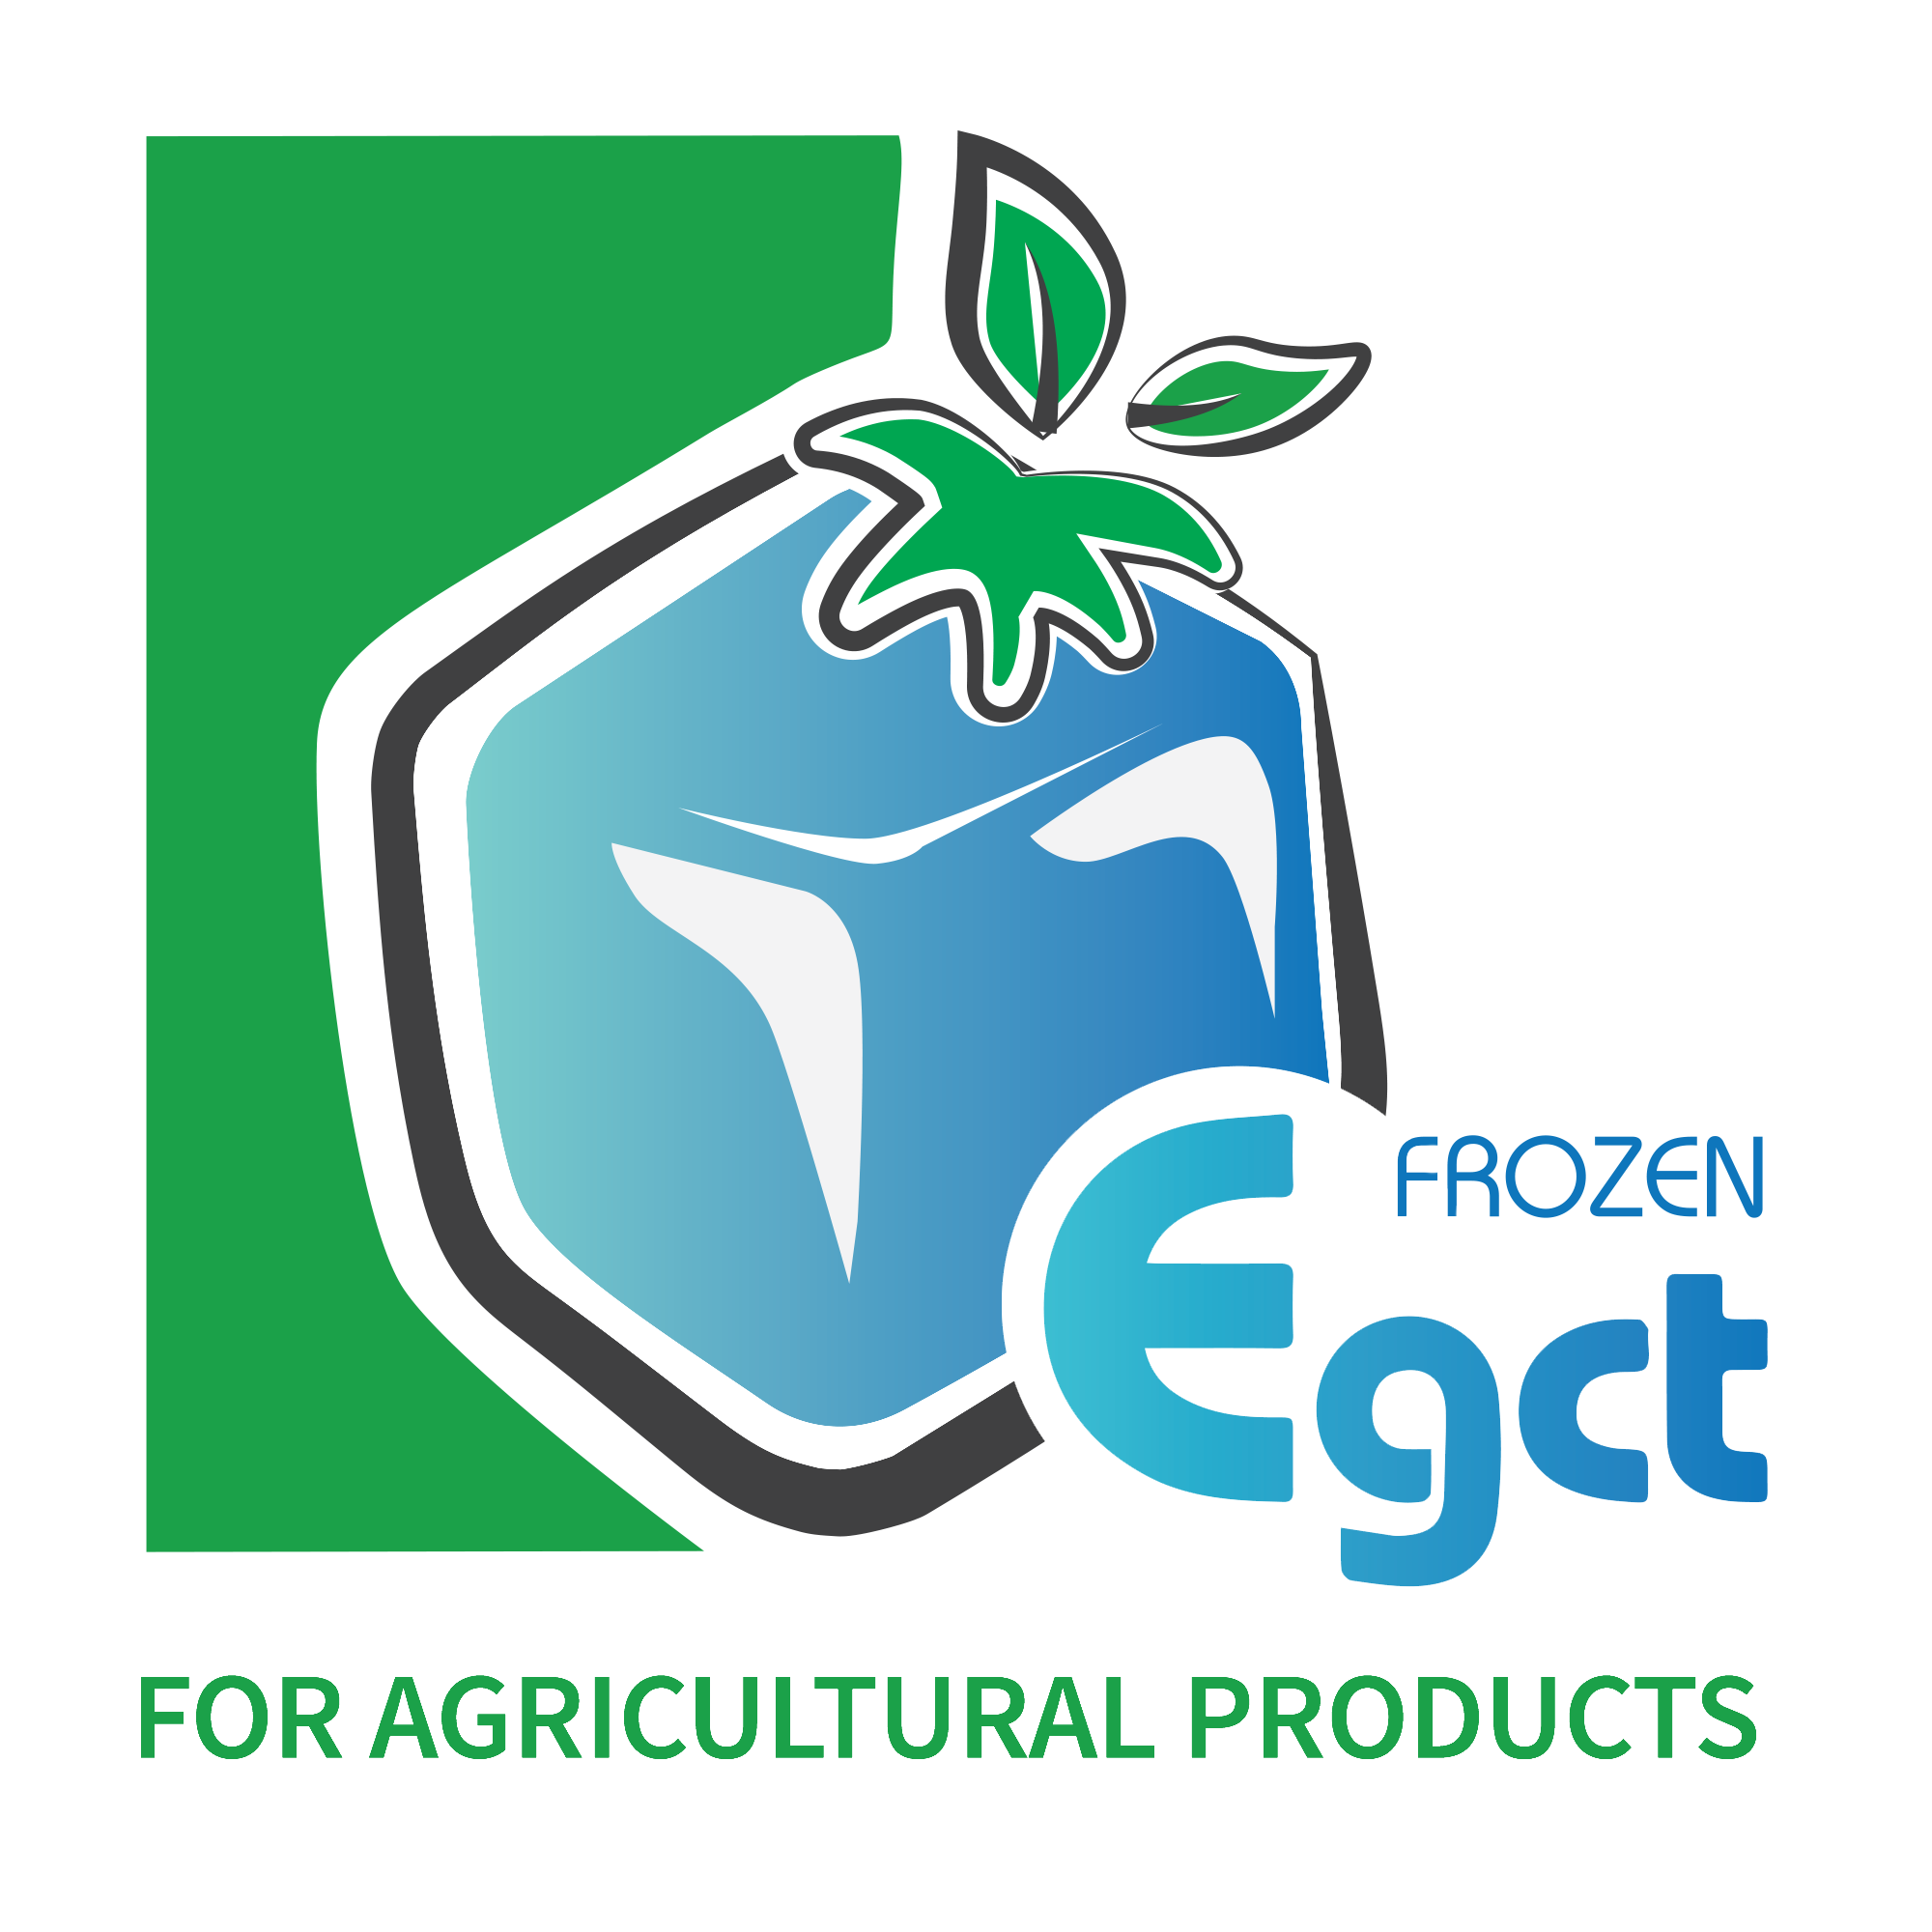 EGCT Frozen Fruits